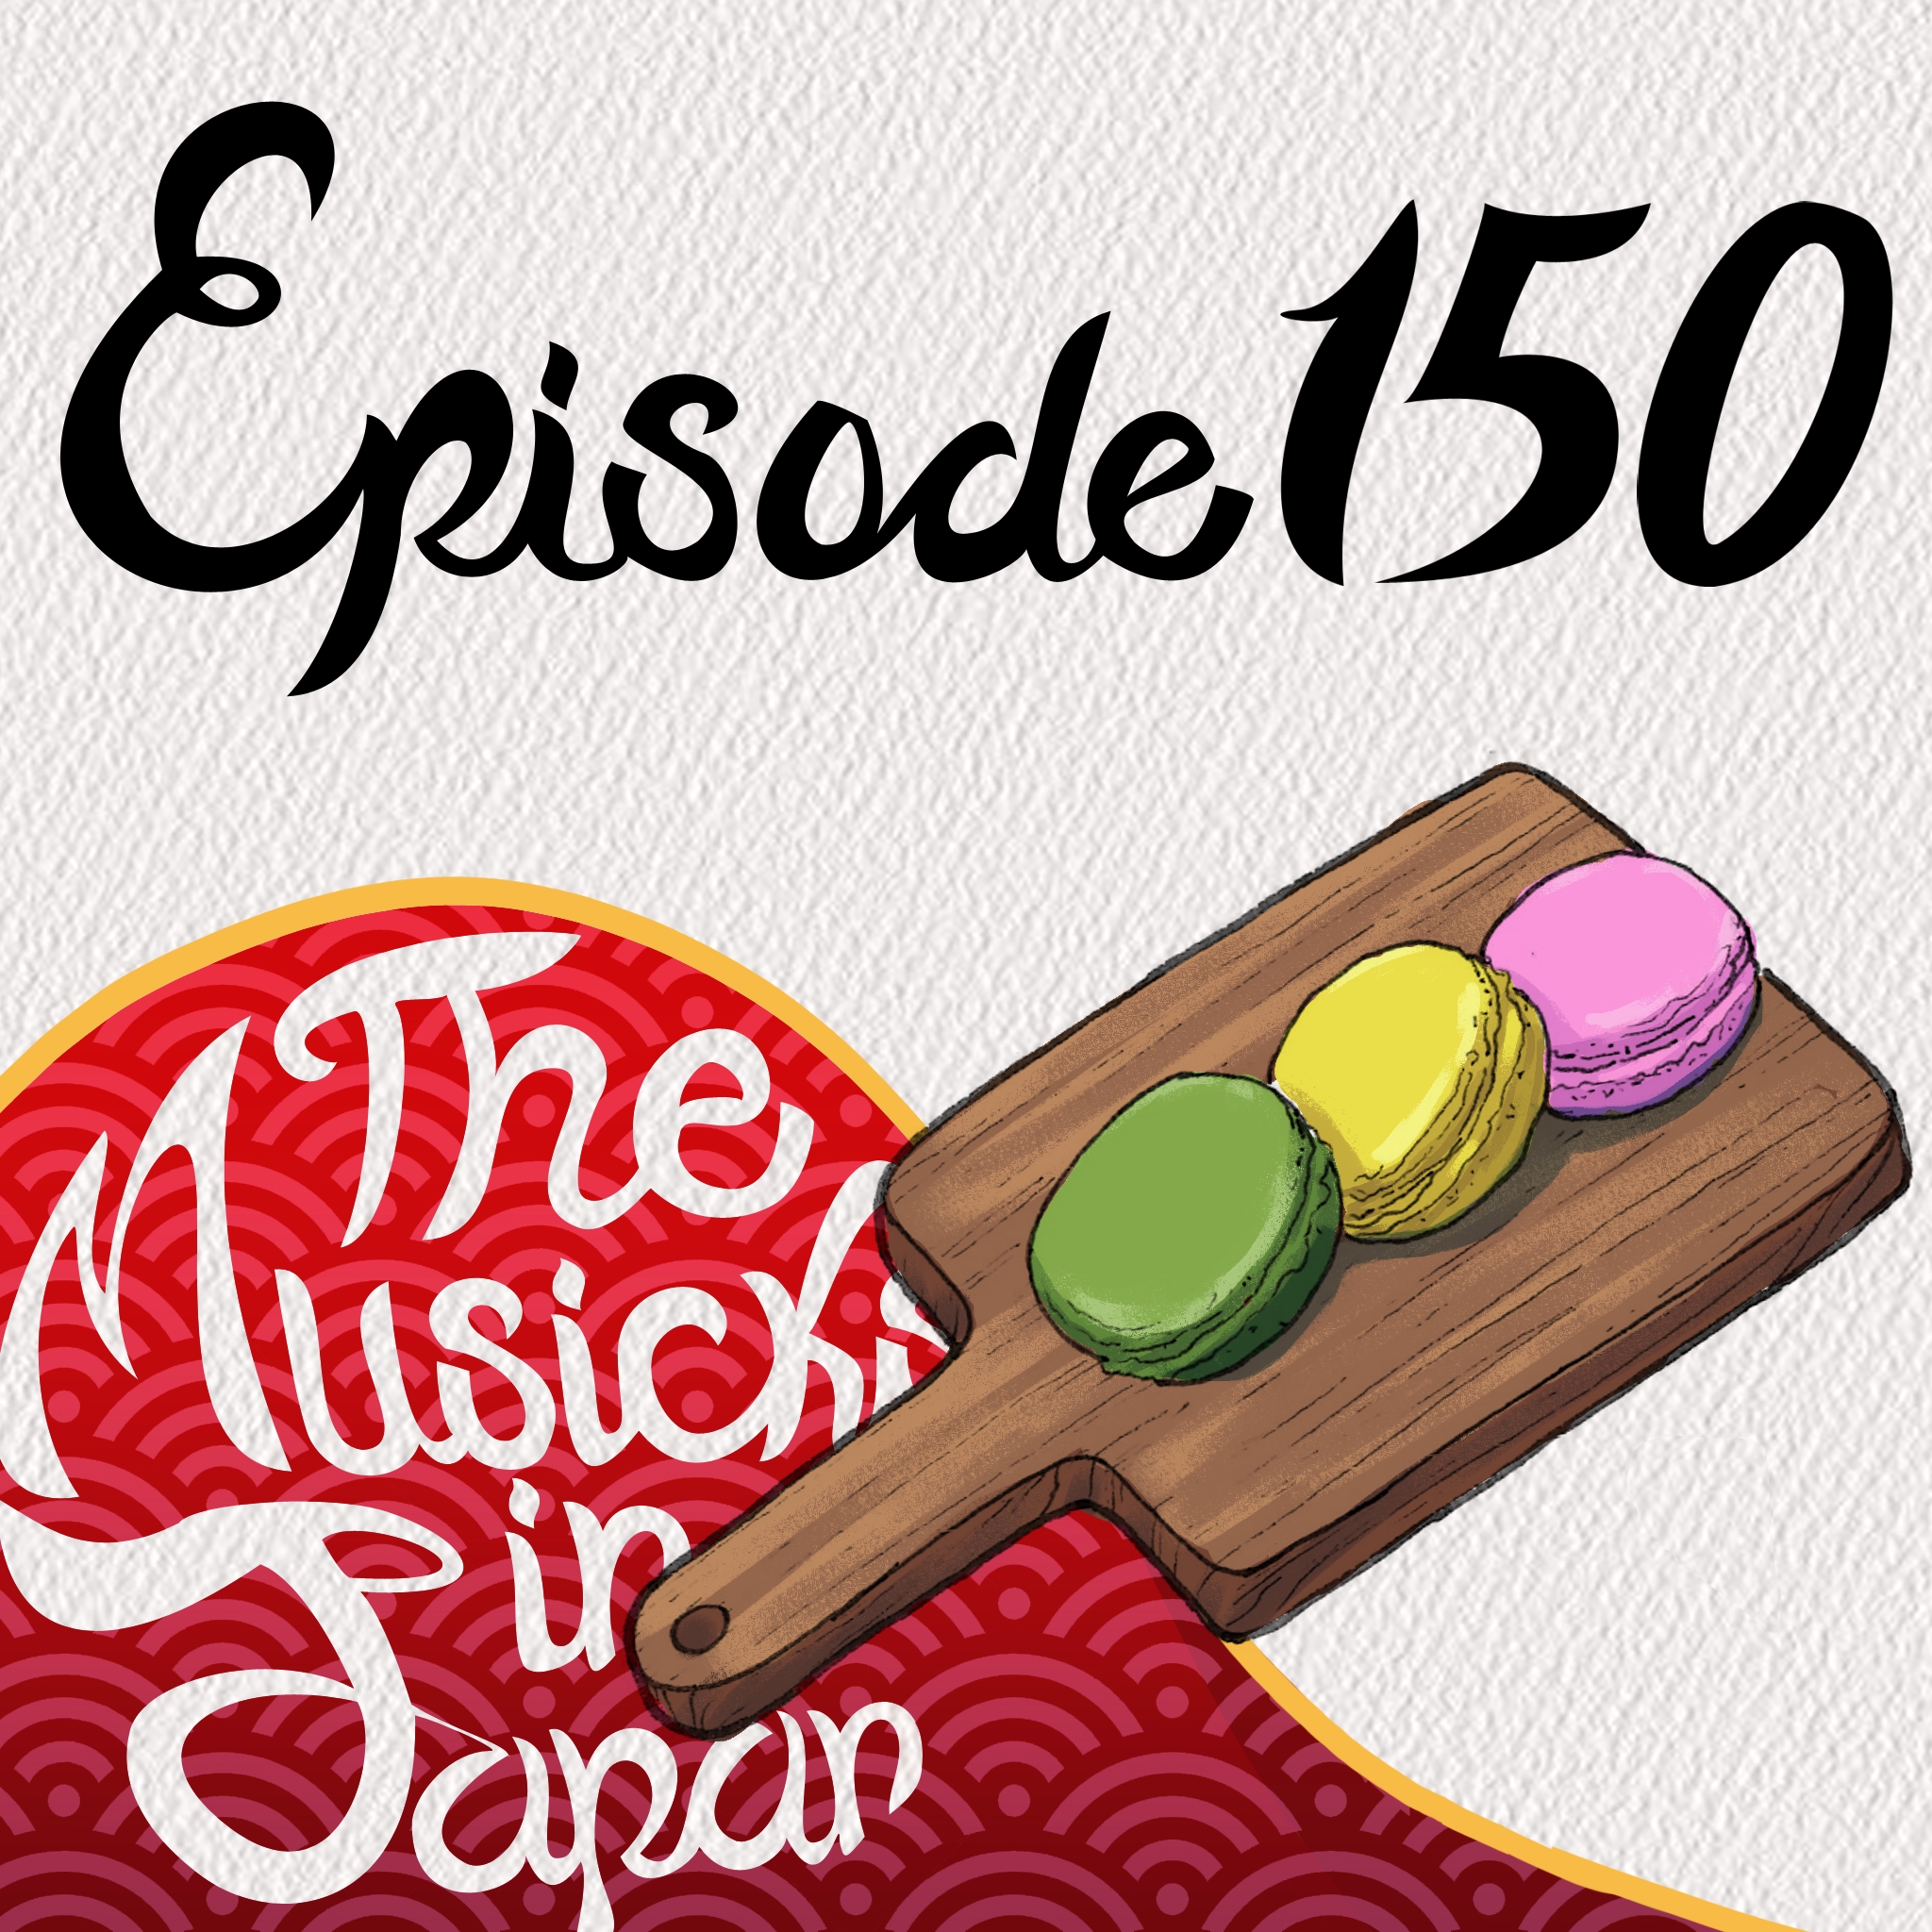 Episode 150: Social Media in Japan vs the U.S.